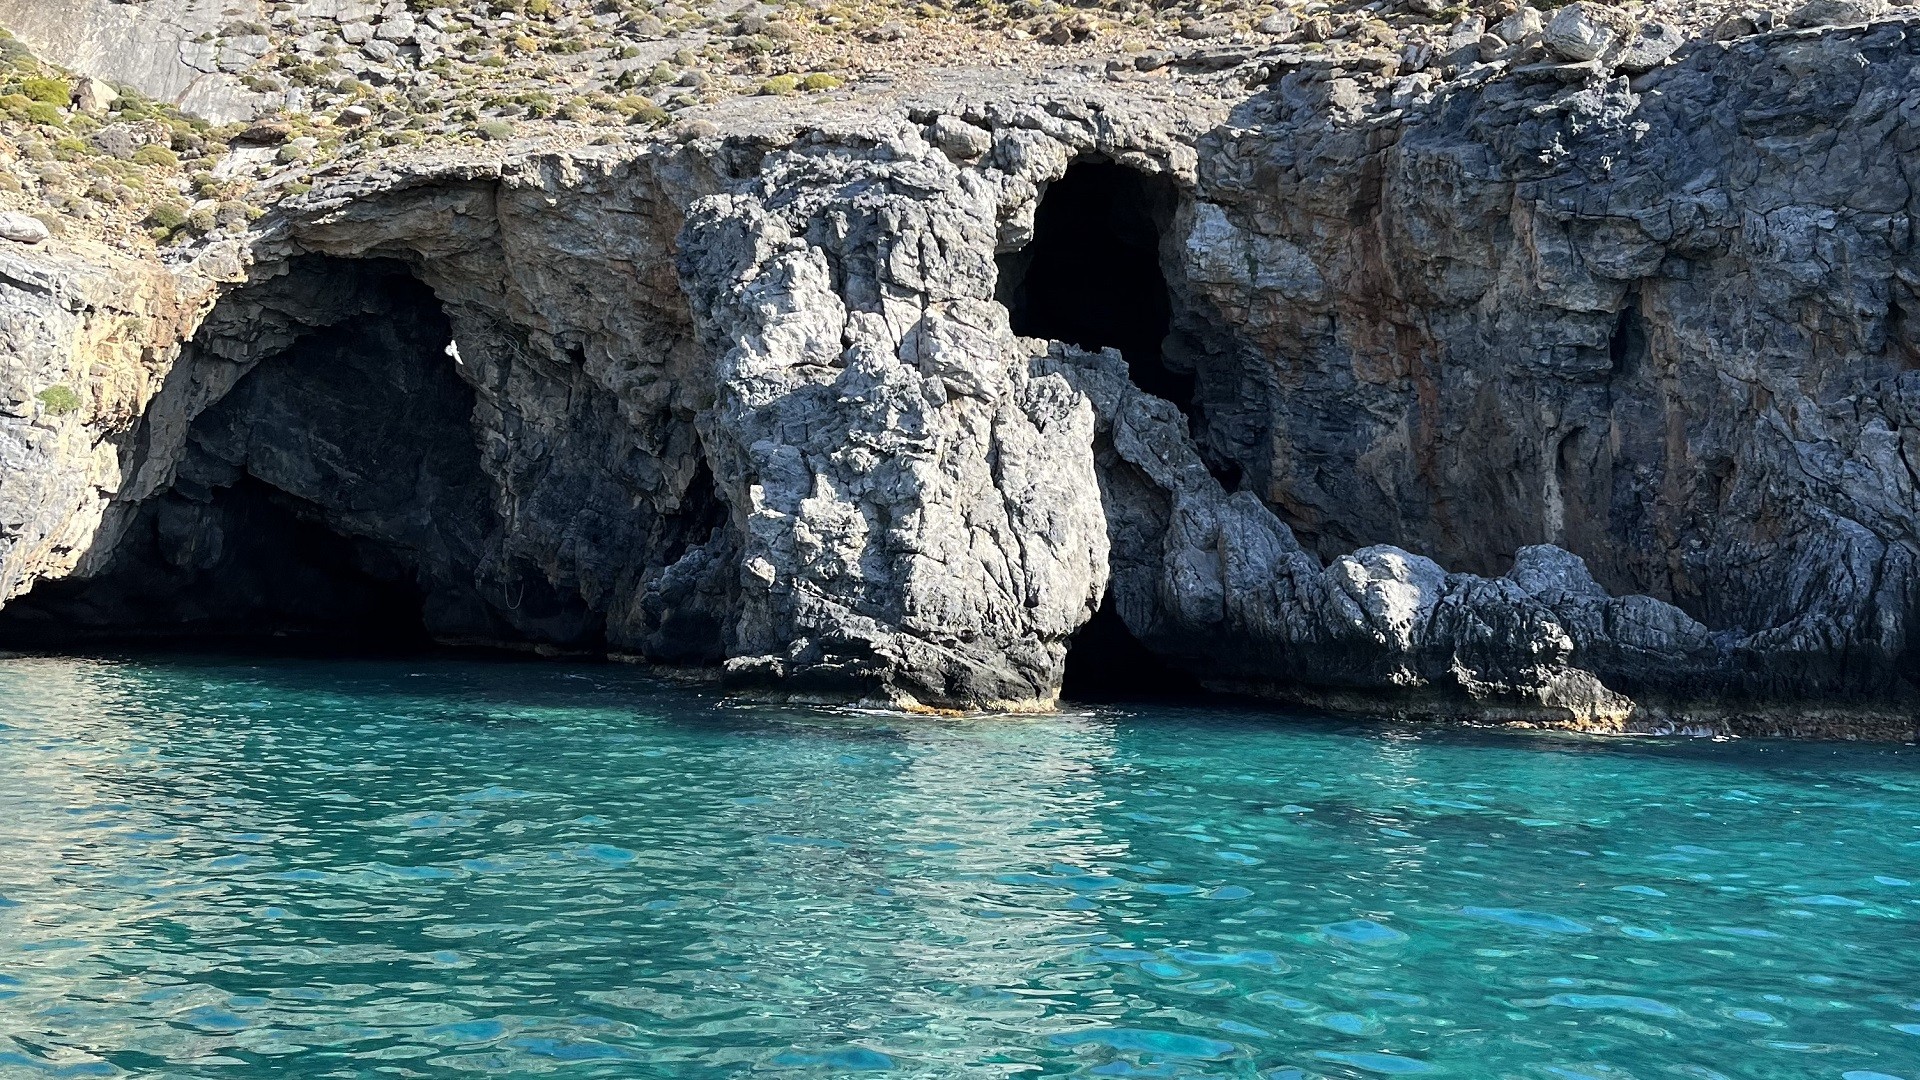 Θαλάσσιο Σπήλαιο Σφακιά - Σκιαδάκι